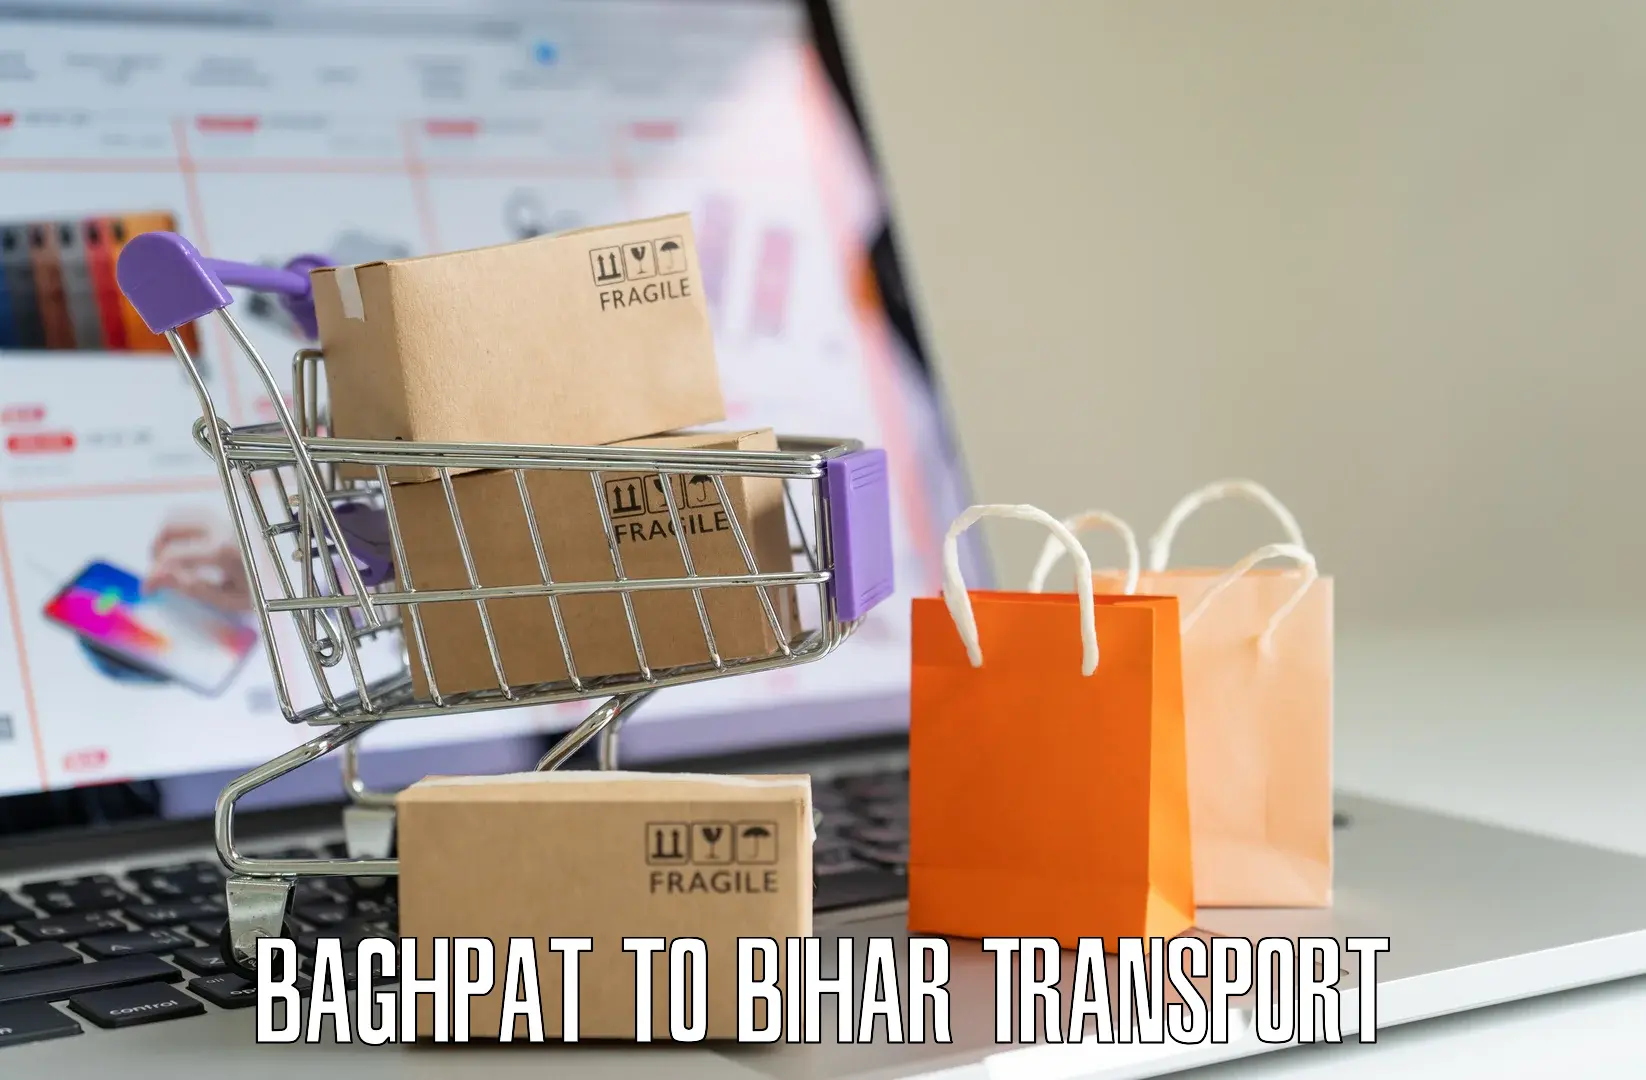 Furniture transport service Baghpat to Kharagpur Munger